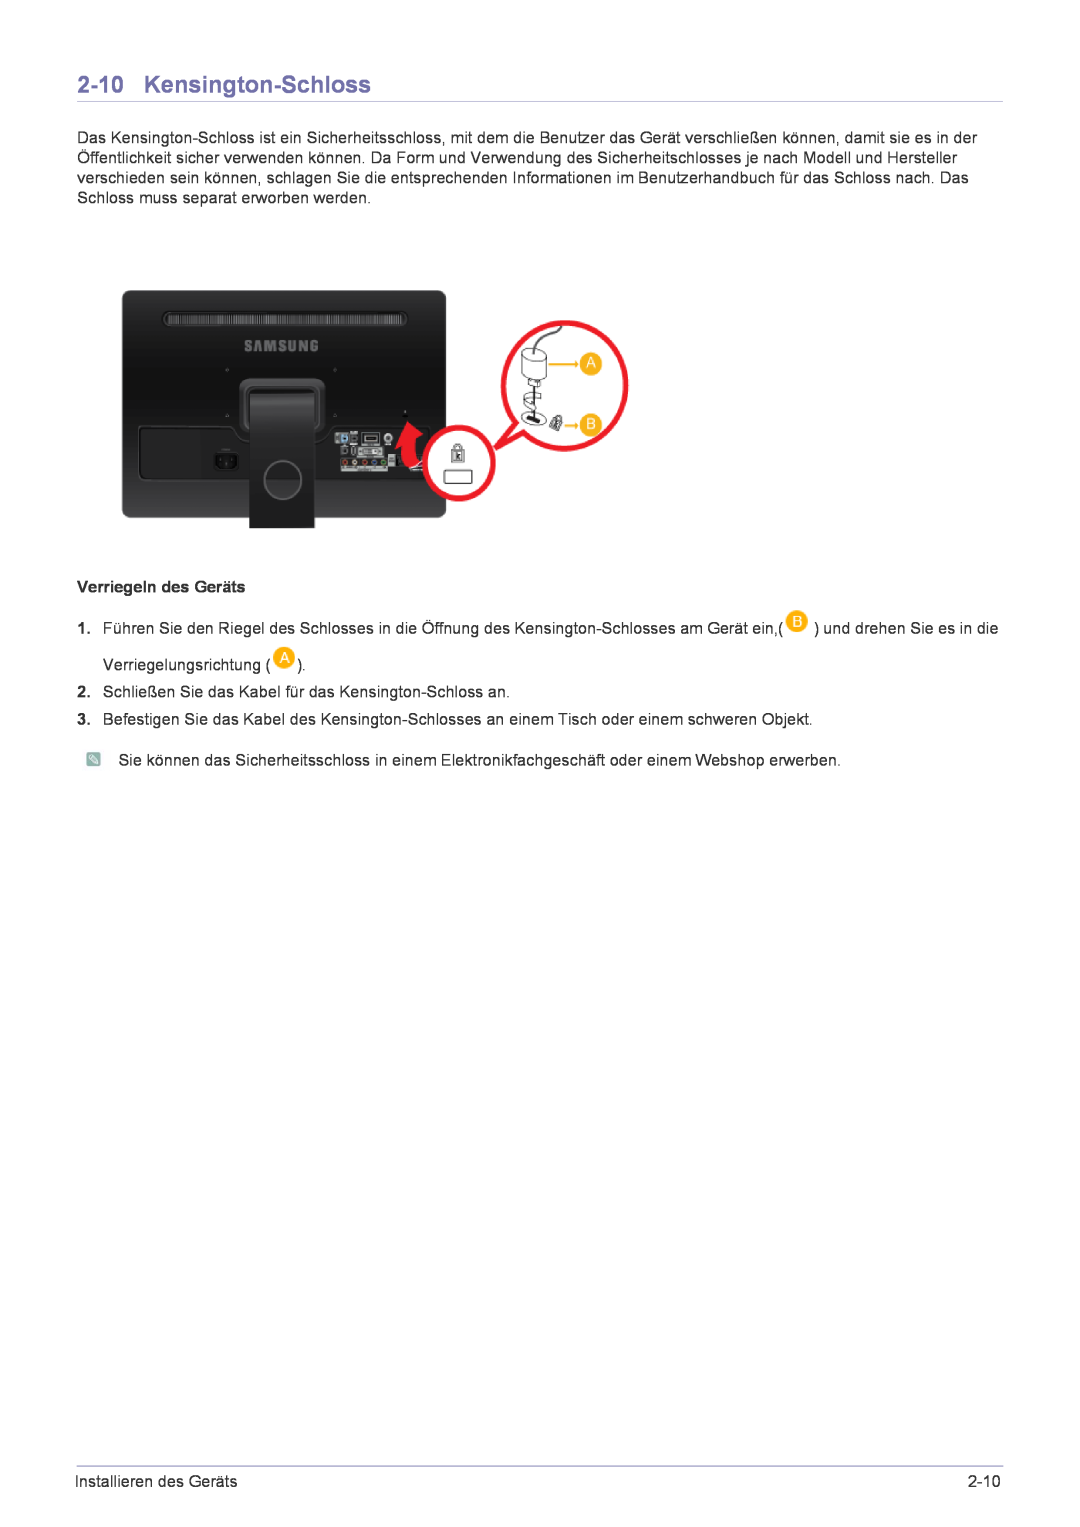 Samsung LS22FMDGF/EN manual Kensington-Schloss, Verriegeln des Geräts 